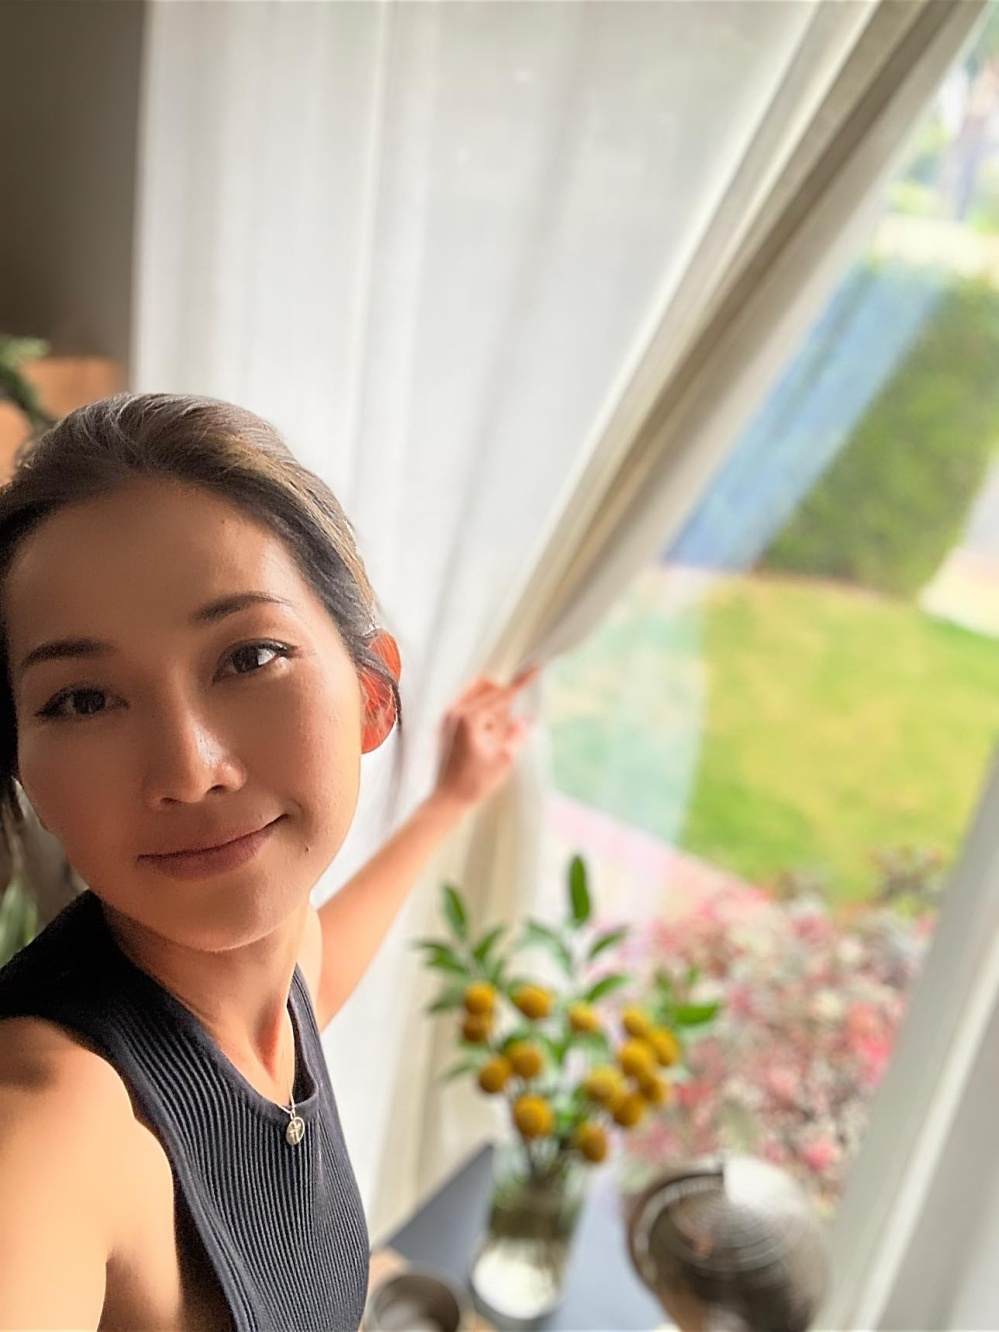 Diễn viên Kim Hiền sống trong biệt thự đầy hoa lá, xanh mướt bốn mùa - Ảnh 4